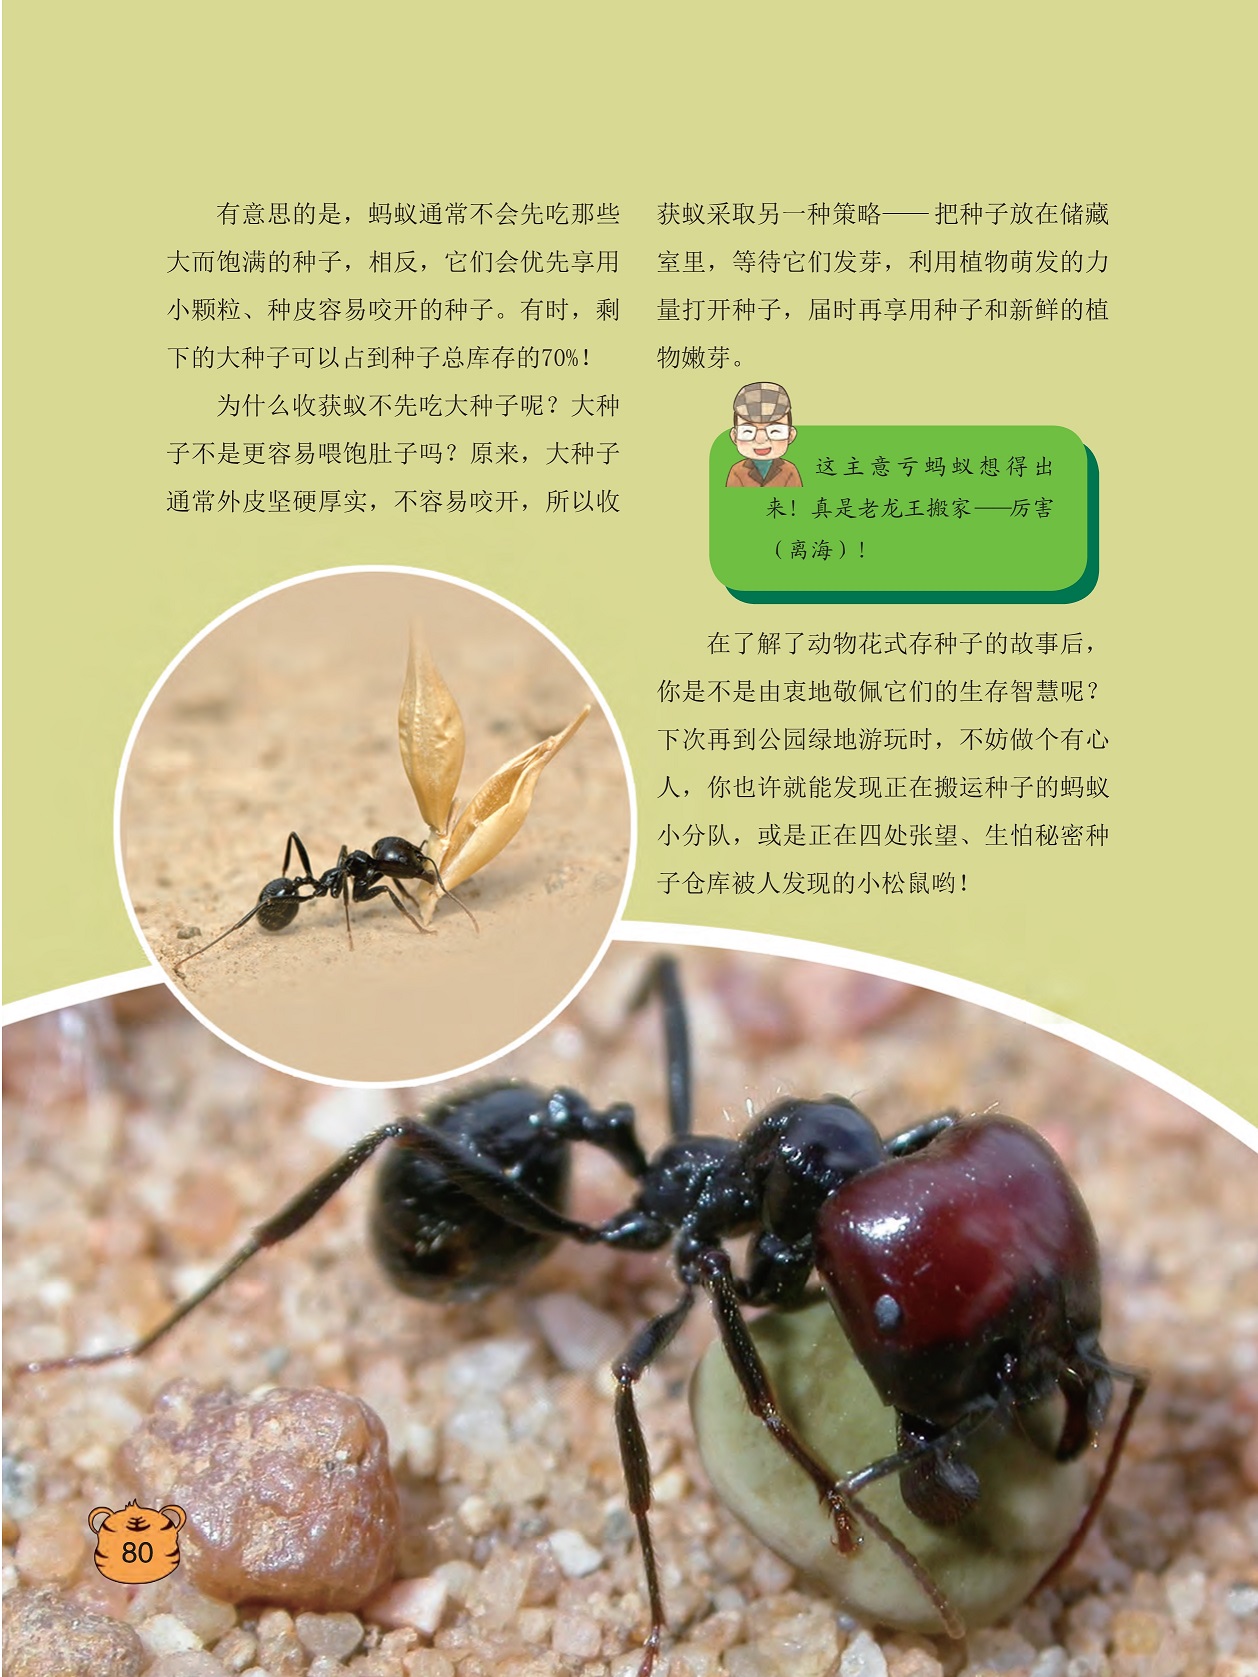 蚂蚁通常不会先吃那些大而饱满的种子,动物花式存种子的故事